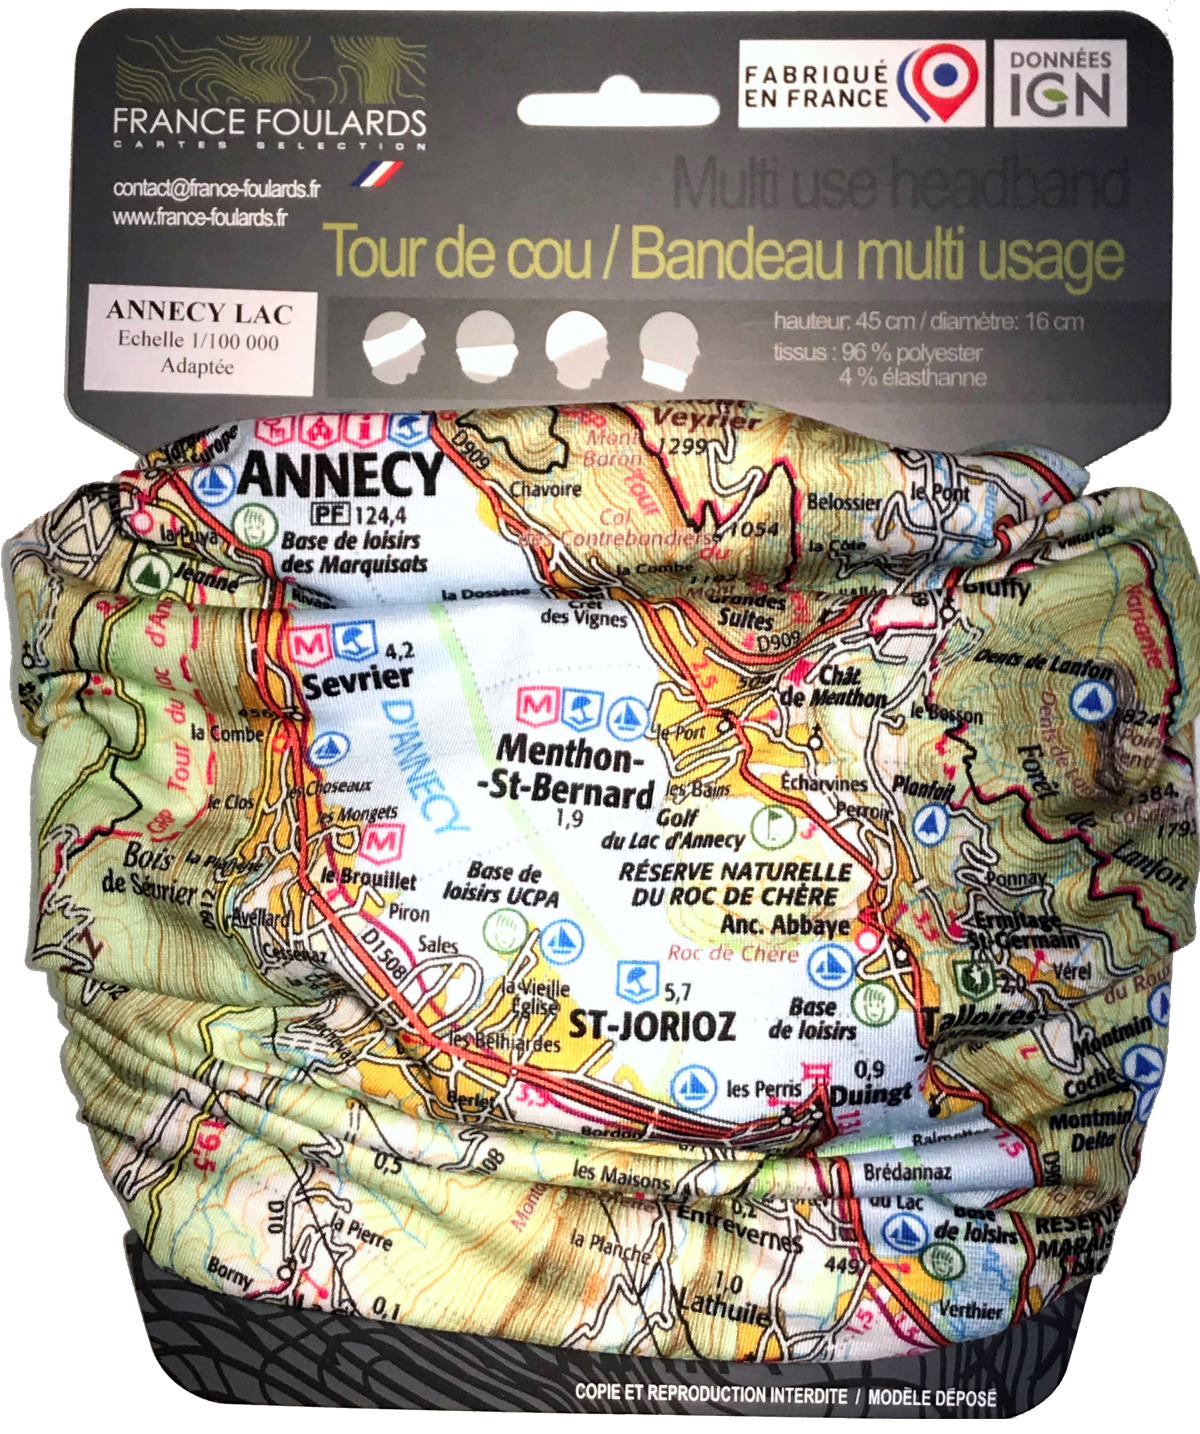 Tour de cou France-Foulards Annecy Lac